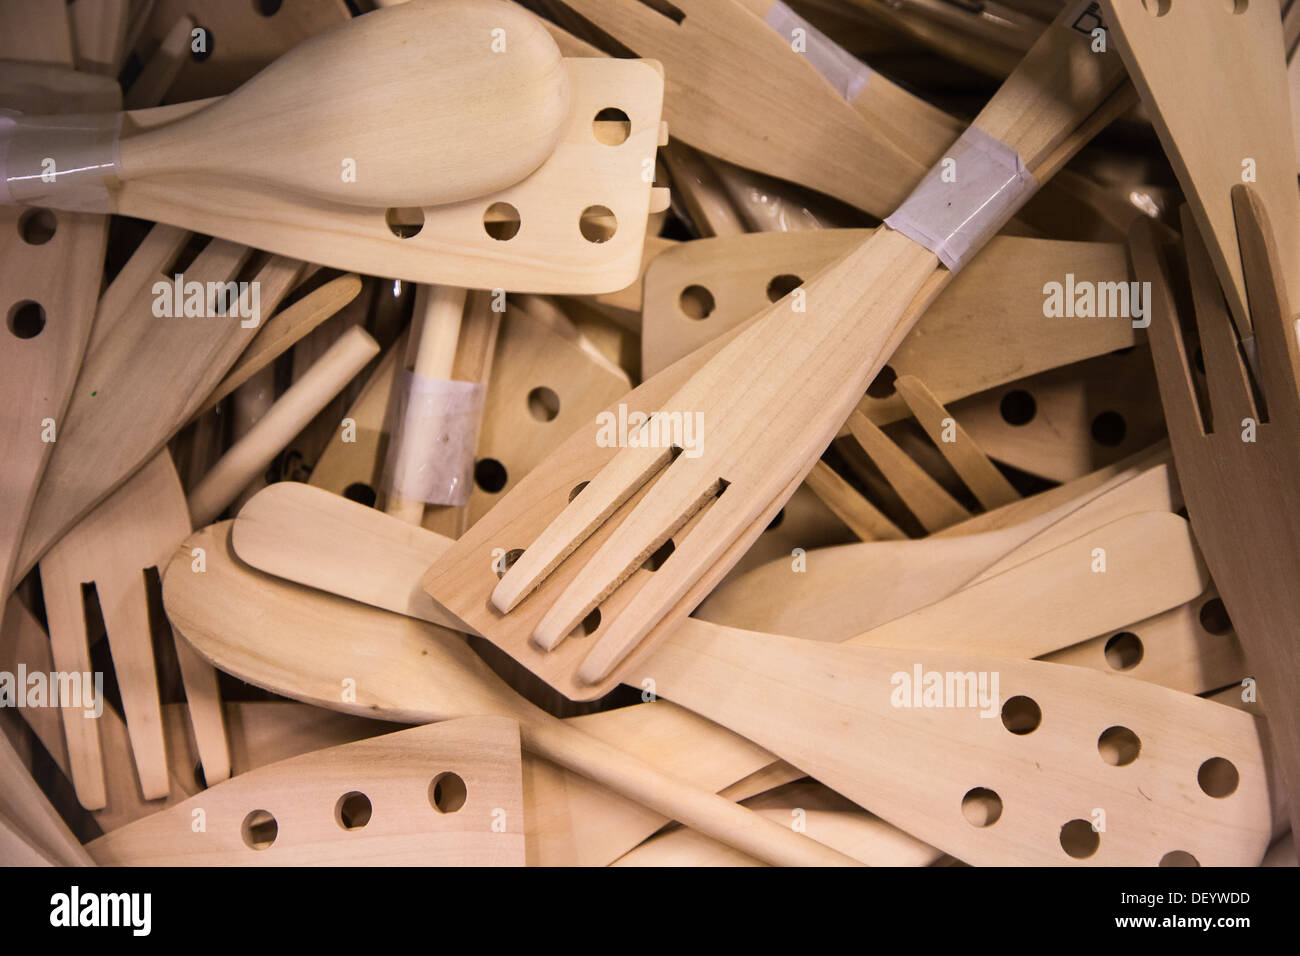 Wooden Kochutensilien auf dem Display in einem IKEA Einrichtungshaus Stockfoto